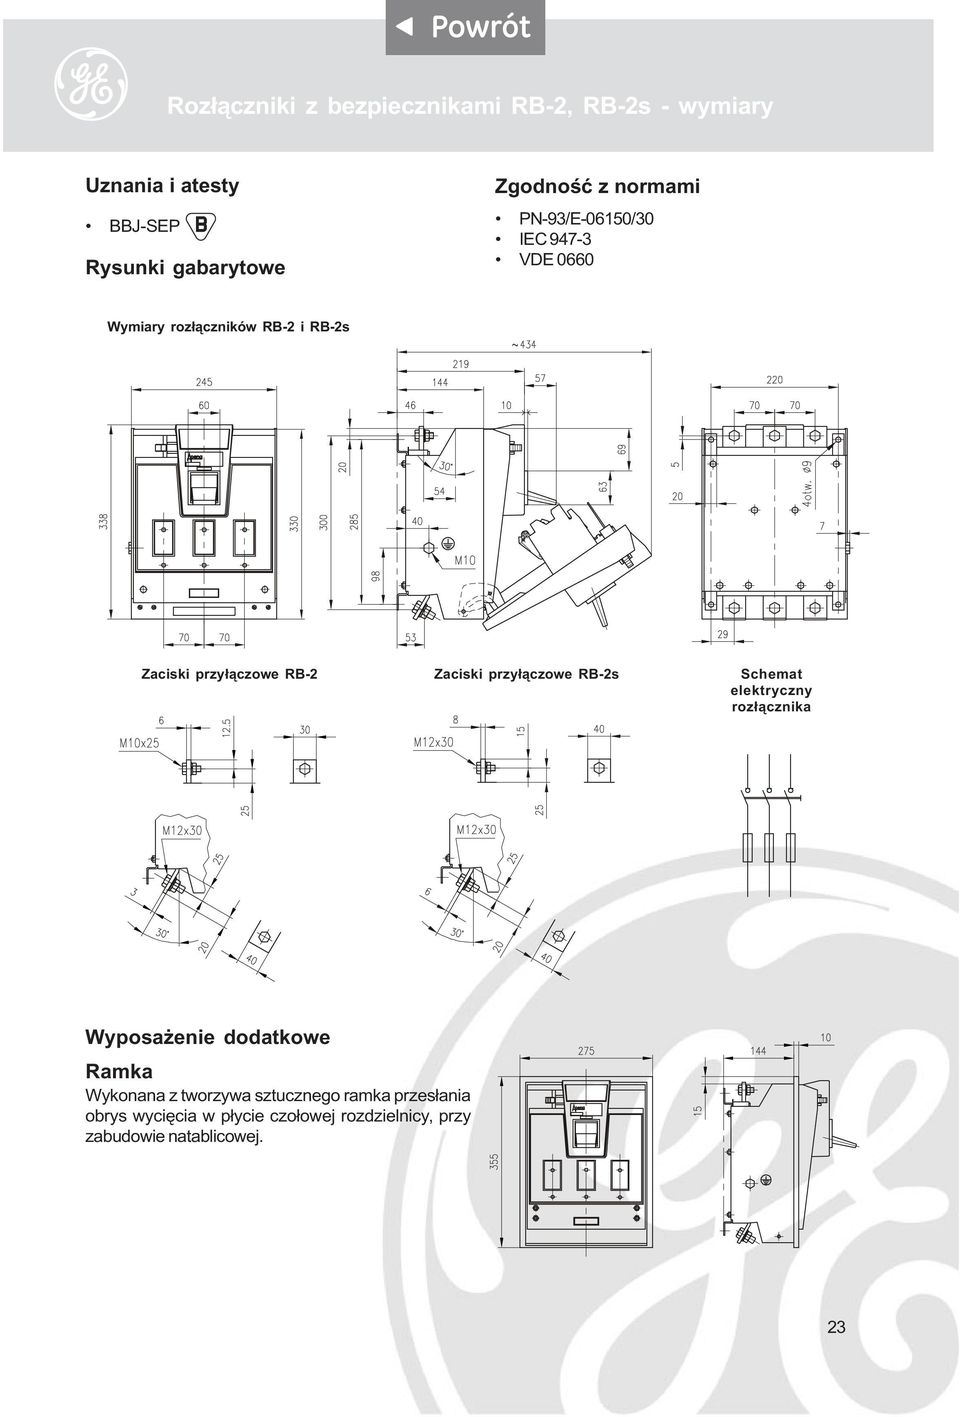 Zaciski przy³¹czowe RB-2s Schemat elektryczny roz³¹cznika Wyposa enie dodatkowe Ramka Wykonana z tworzywa